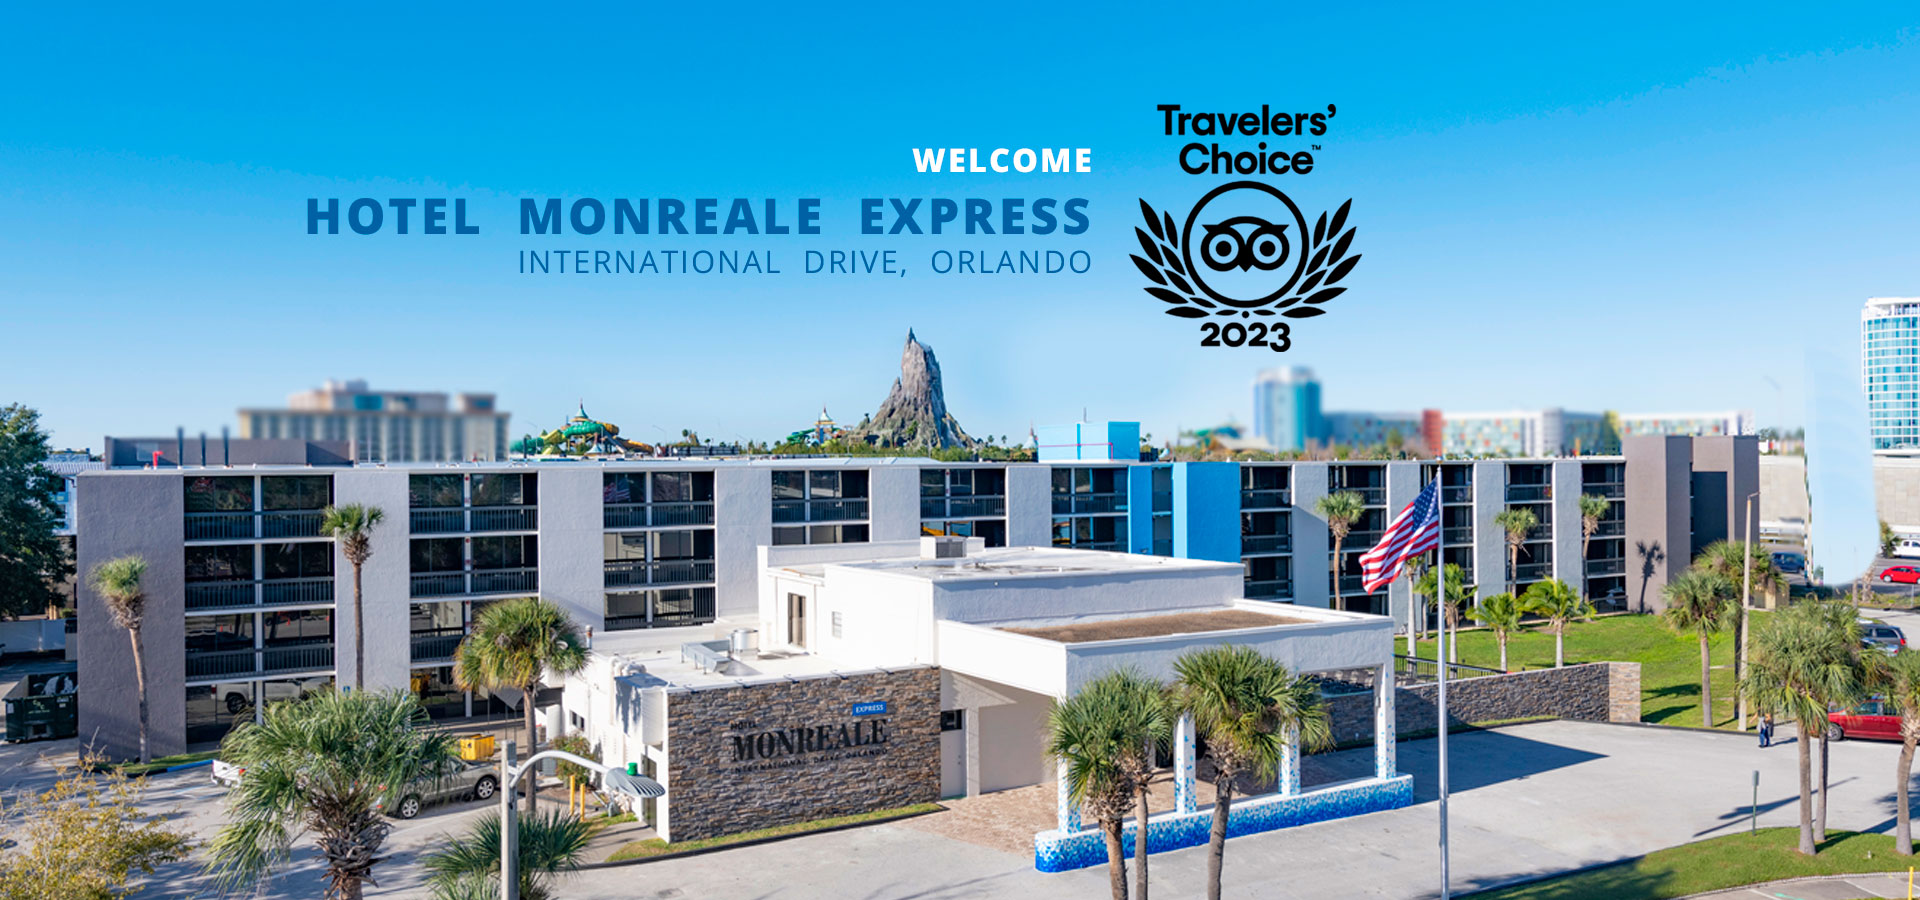 Hotel Monreale Express I-Drive Orlando Lobby